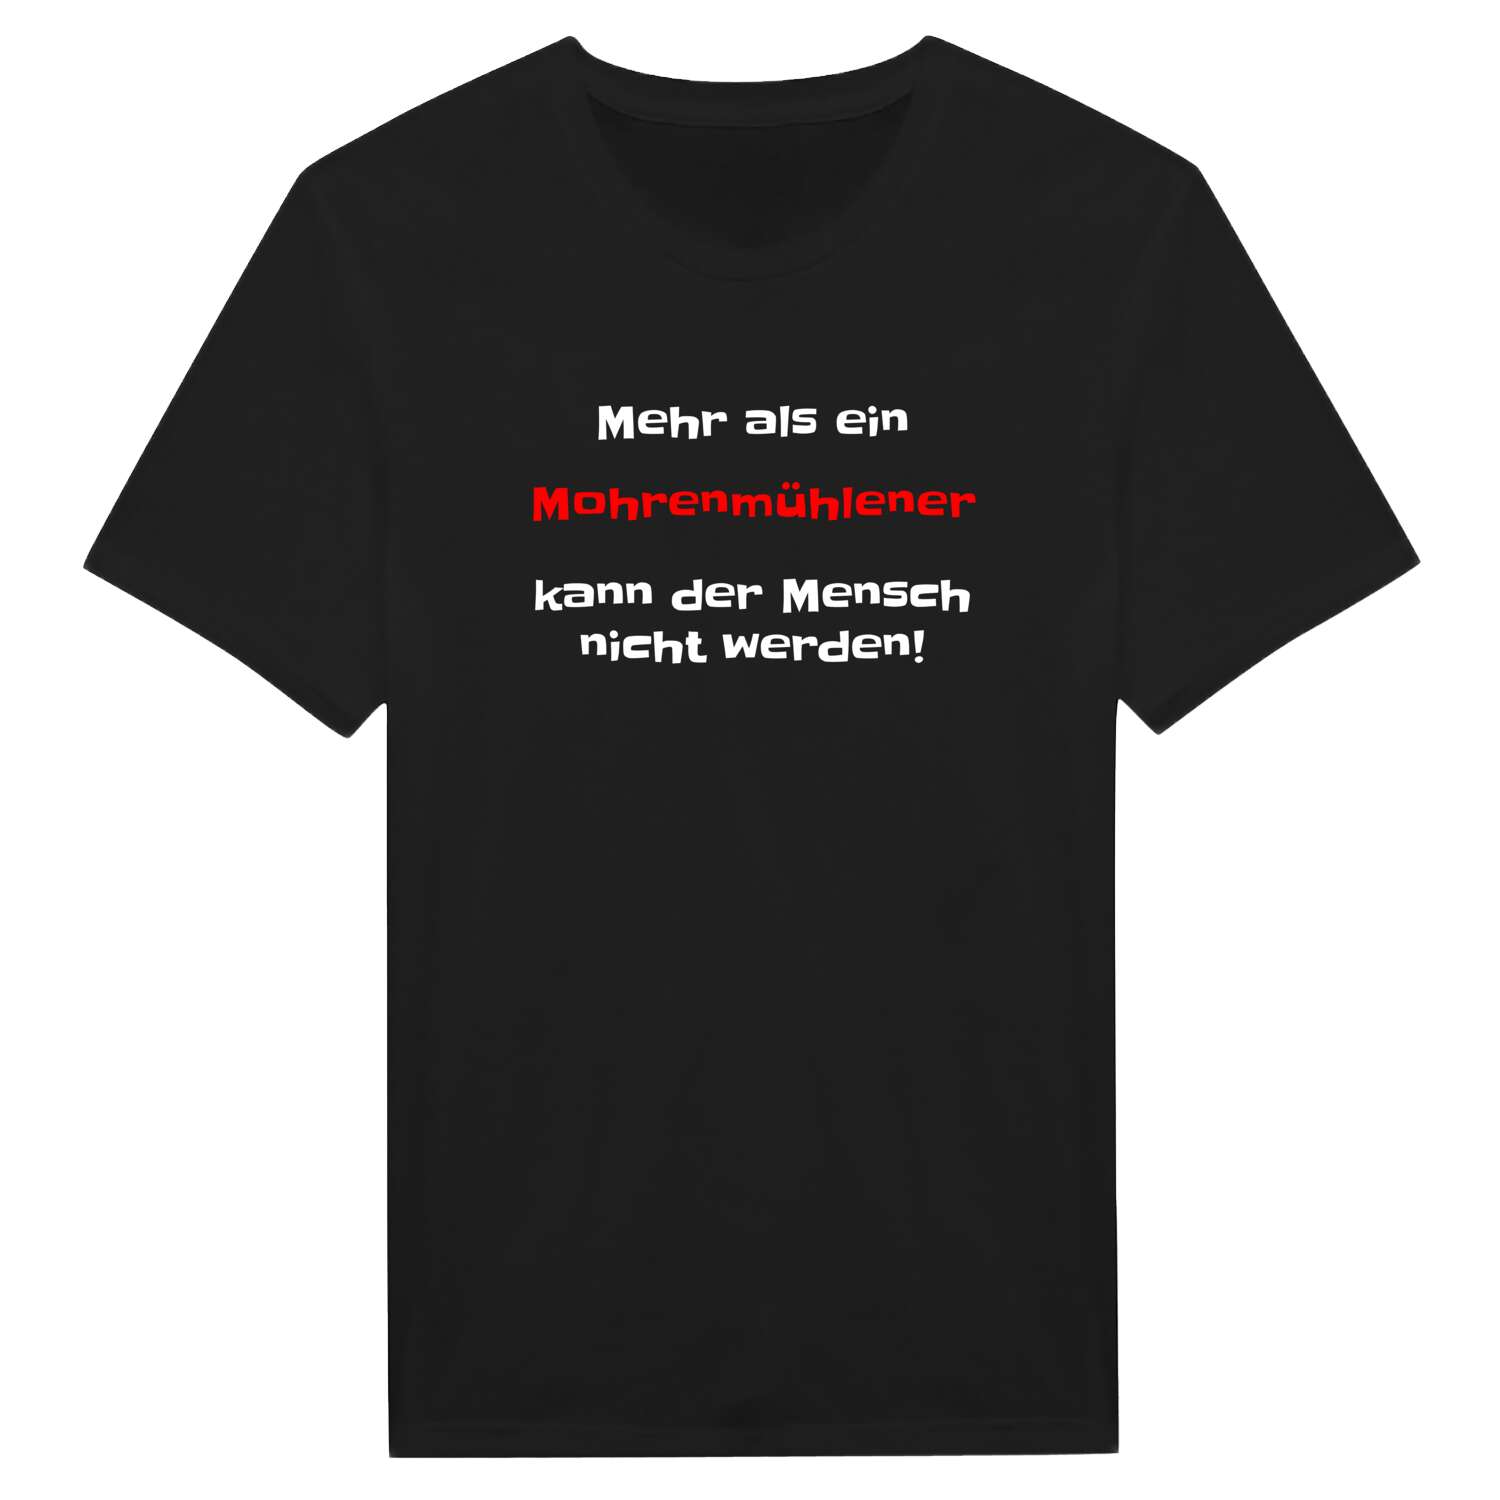 Mohrenmühle T-Shirt »Mehr als ein«